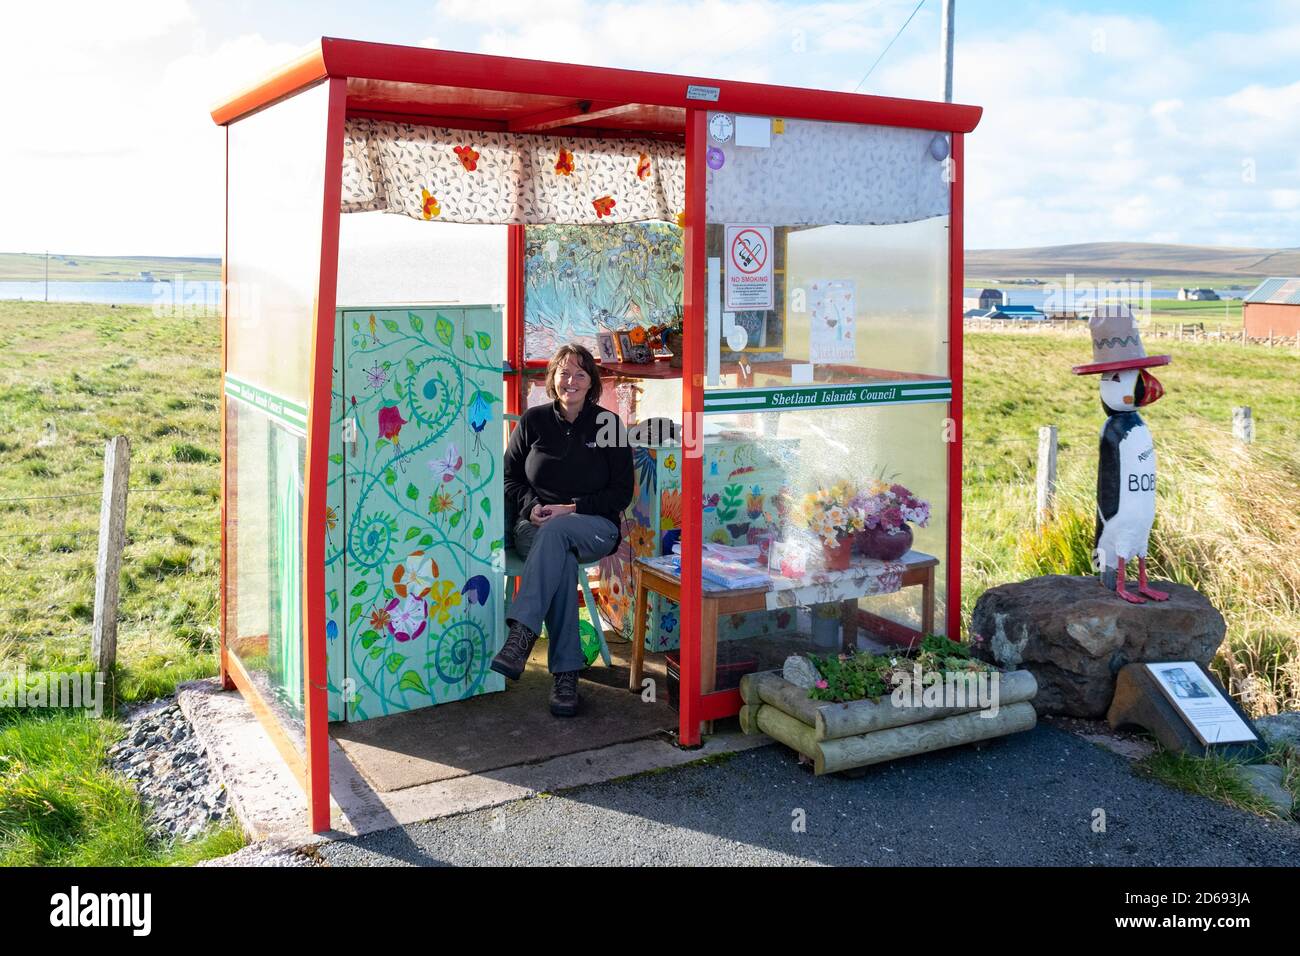 Bobby's bus Shelter - touriste assis à l'intérieur de l'attraction touristique originale, Unst, Shetland, Écosse, Royaume-Uni Banque D'Images